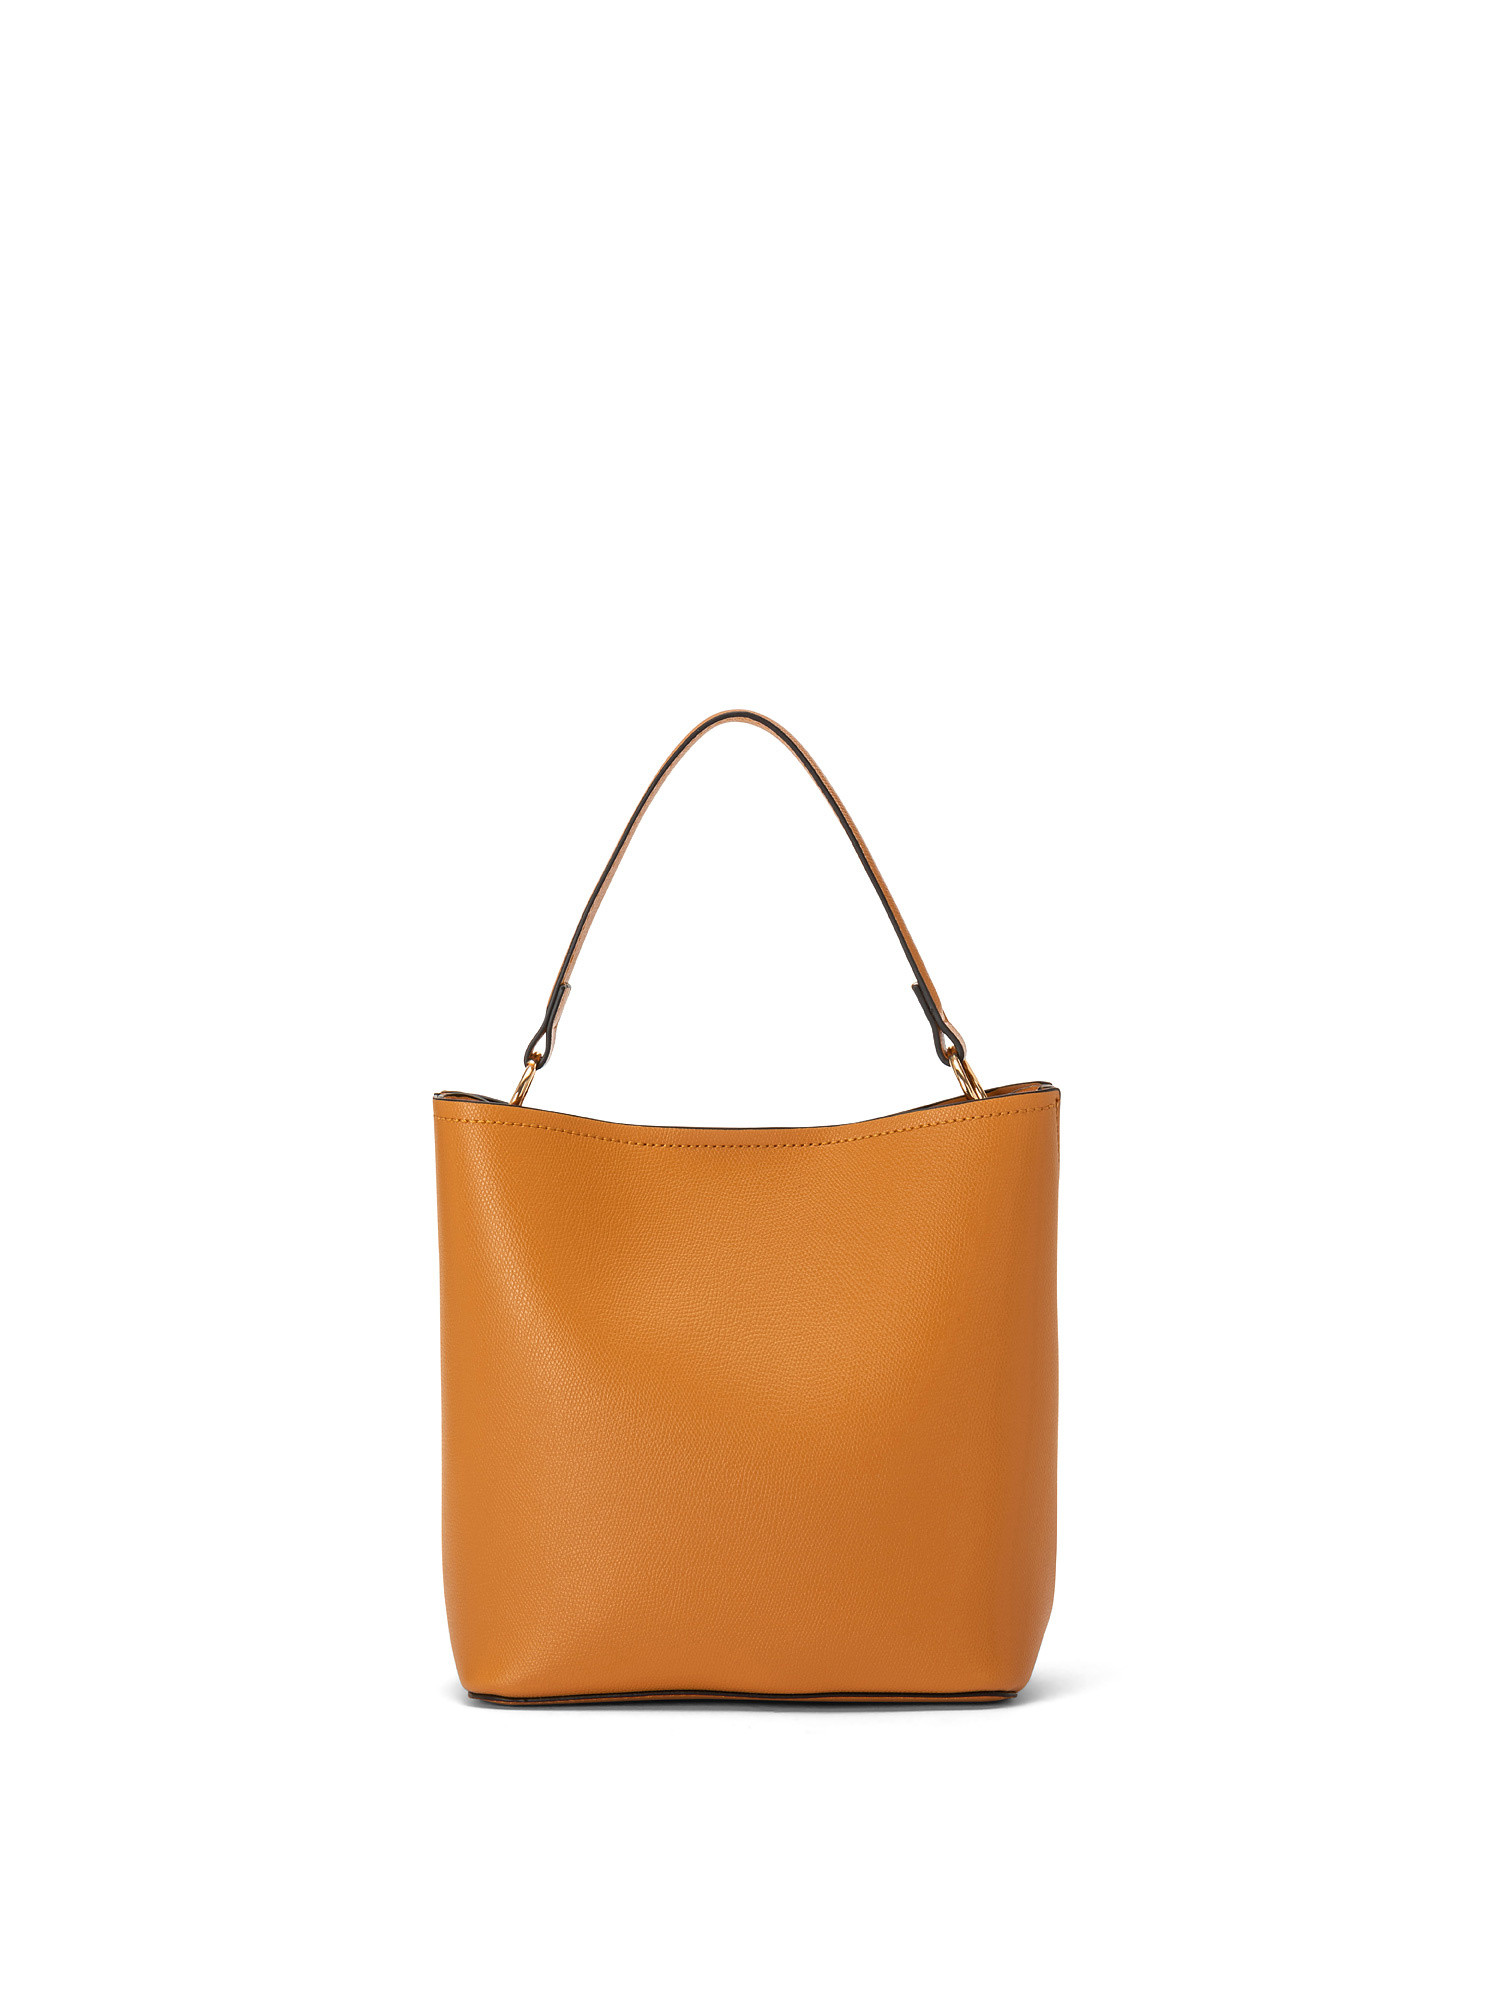 Leatherette hobo bag, Orange, large image number 0